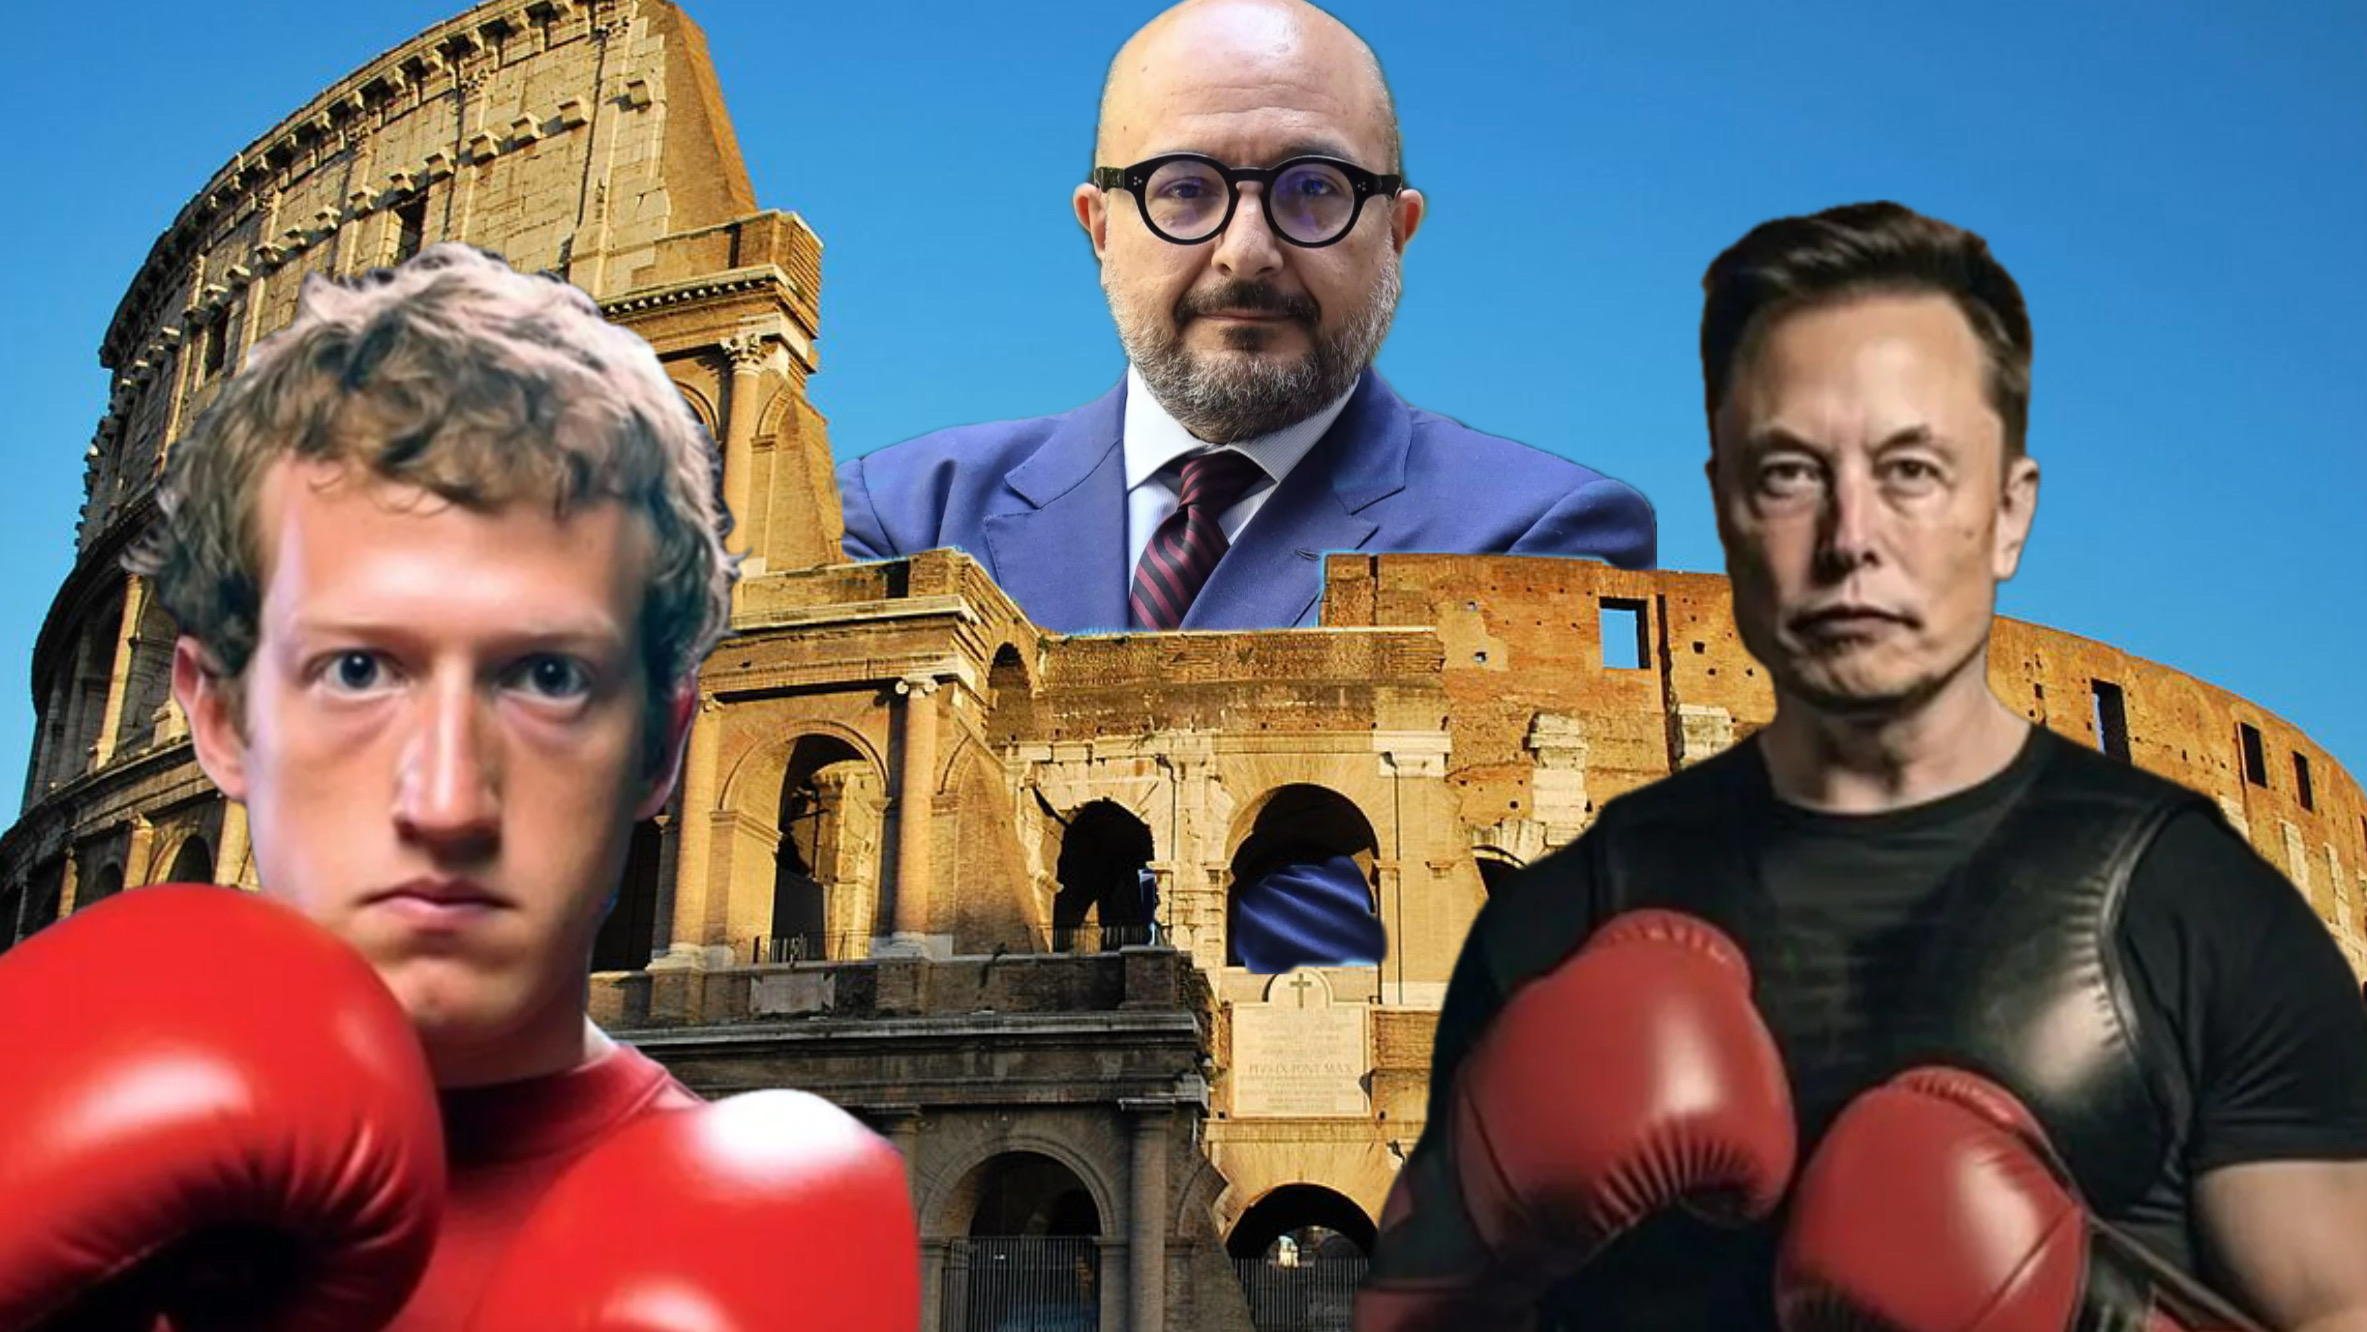 Il Colosseo con il ministro Sangiuliano, Mark Zuckerberg ed Elon Musk